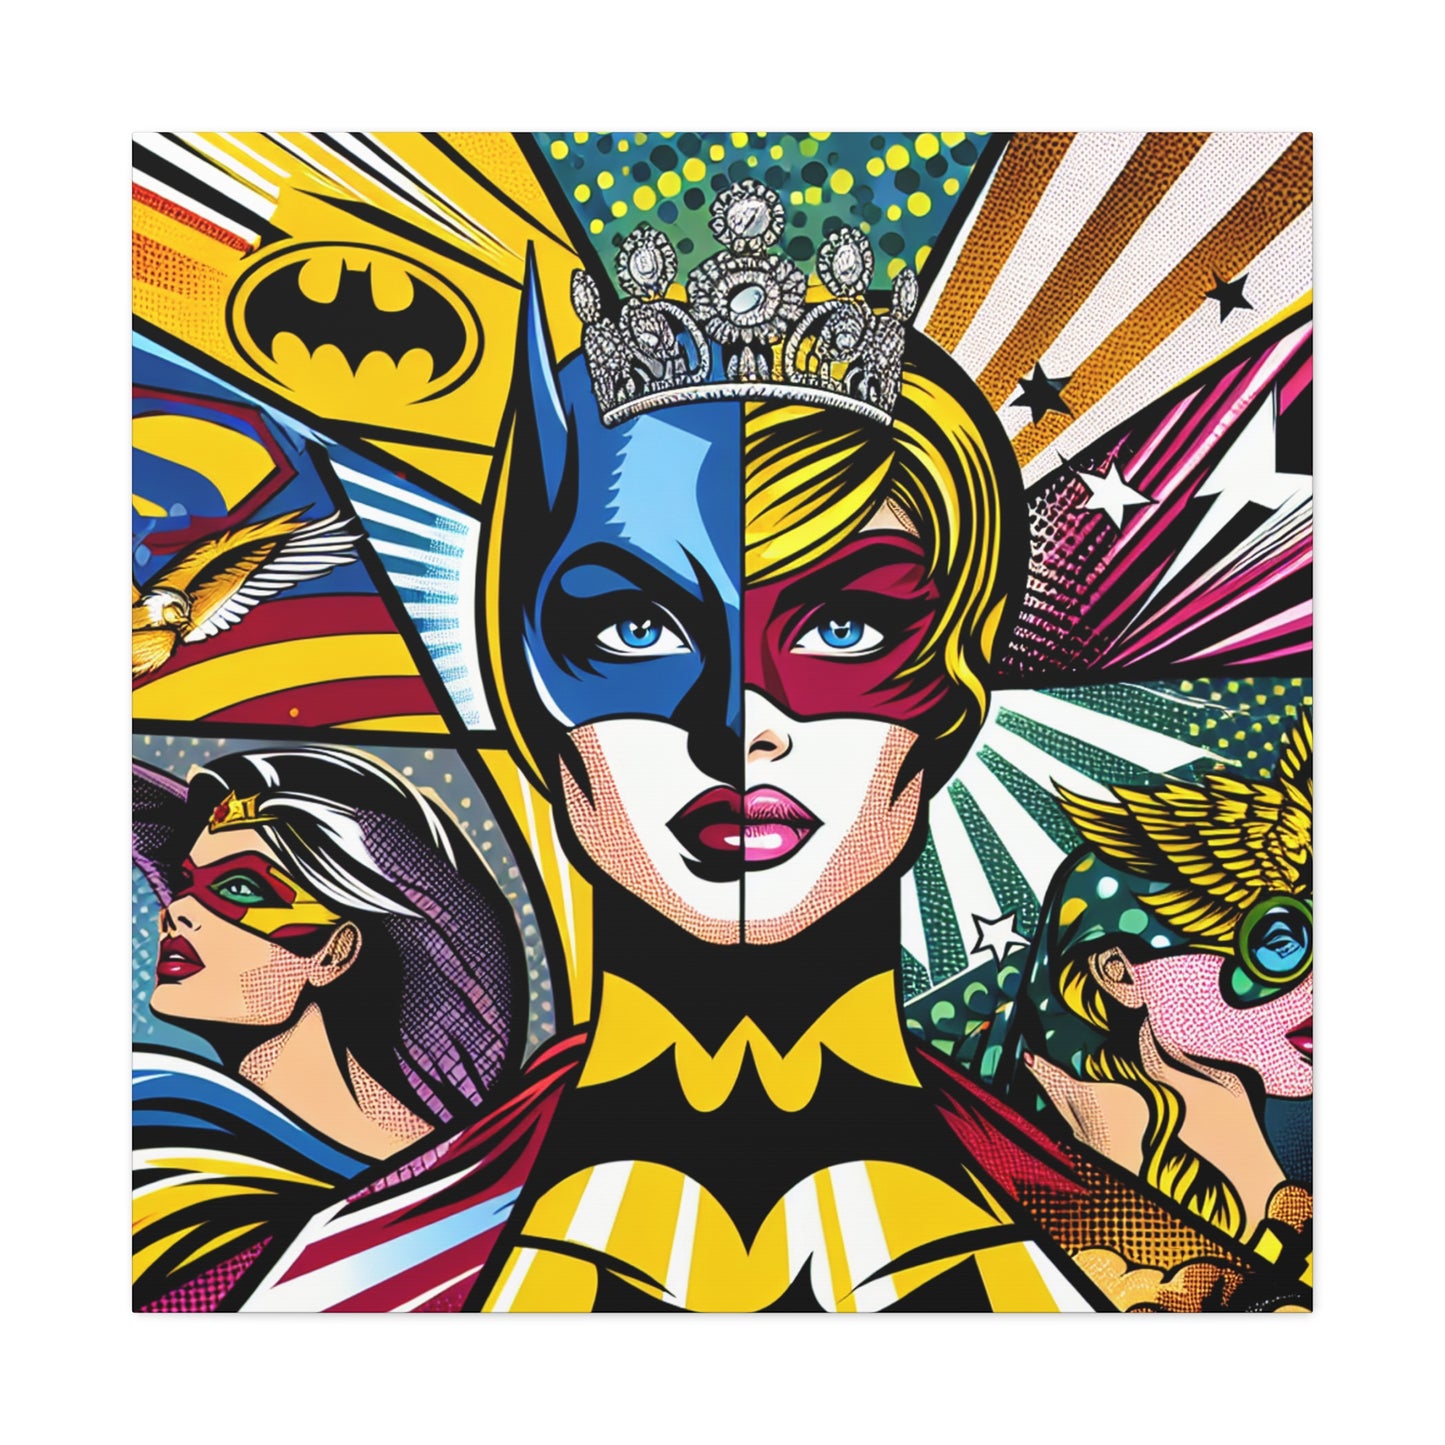 "Héroes del arte pop: una mezcla de iconos" - El estilo alienígena del arte pop de Canva